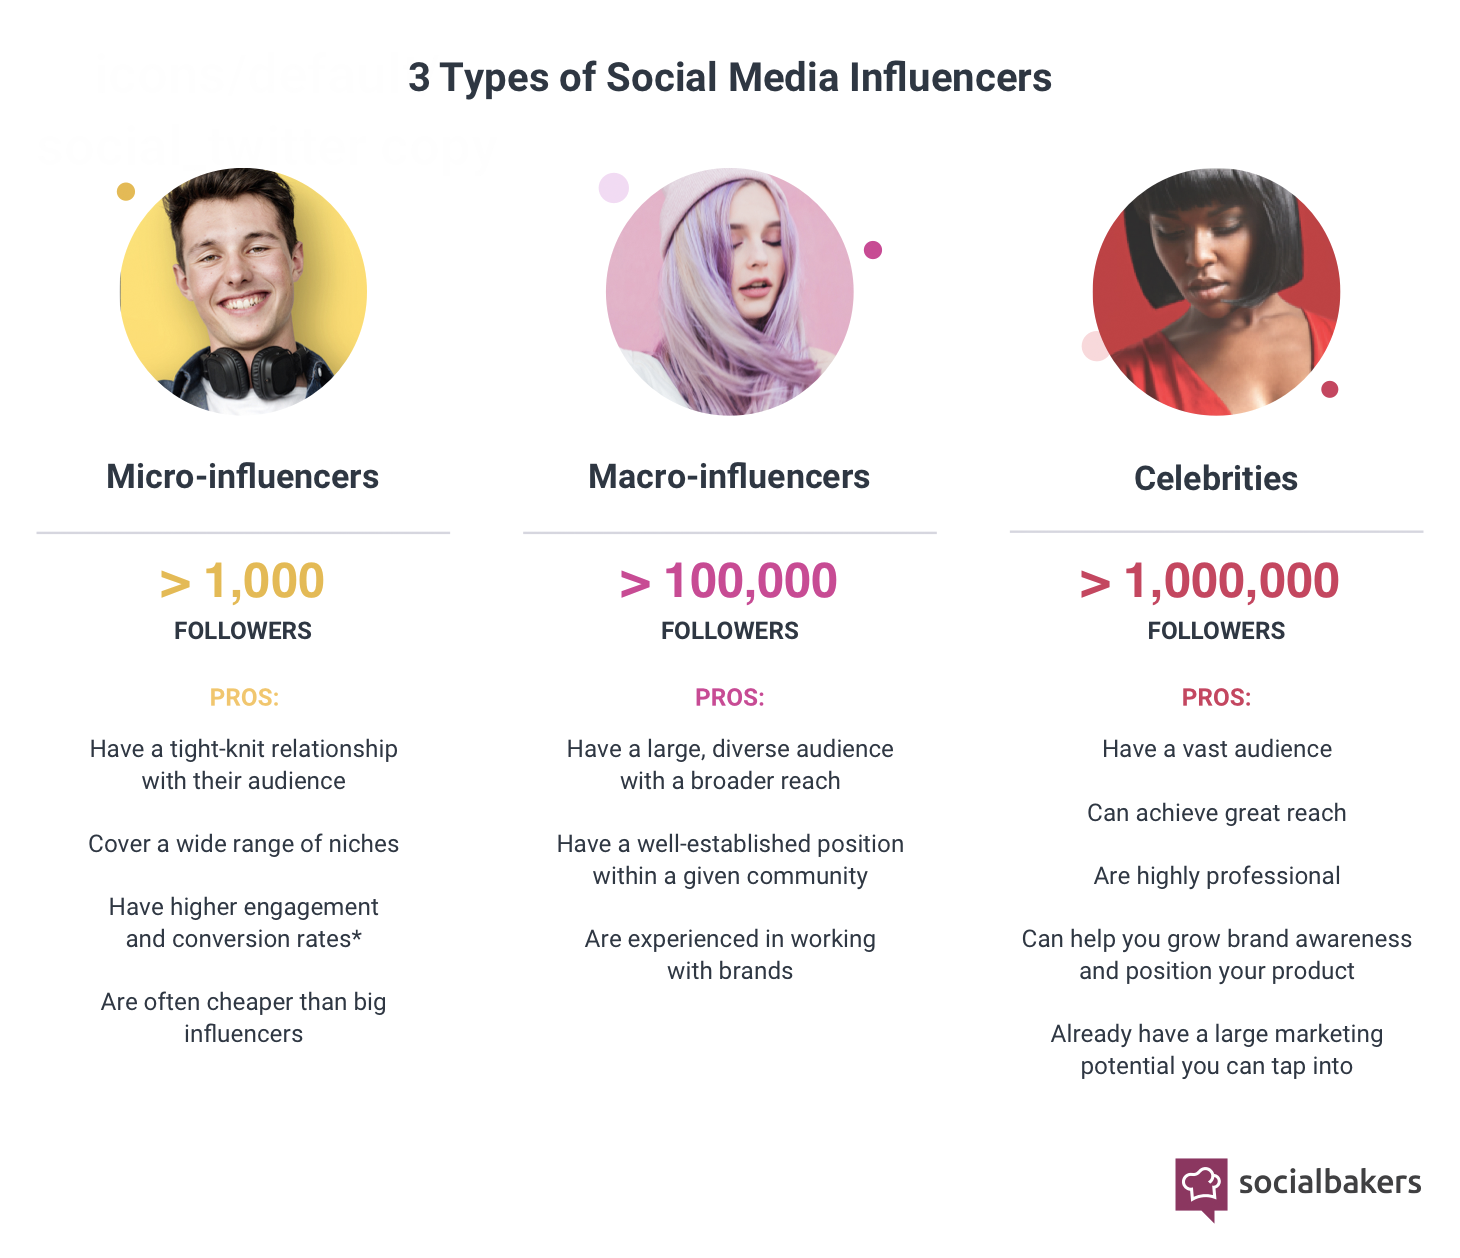 categorie influencer secondo Socialbaker